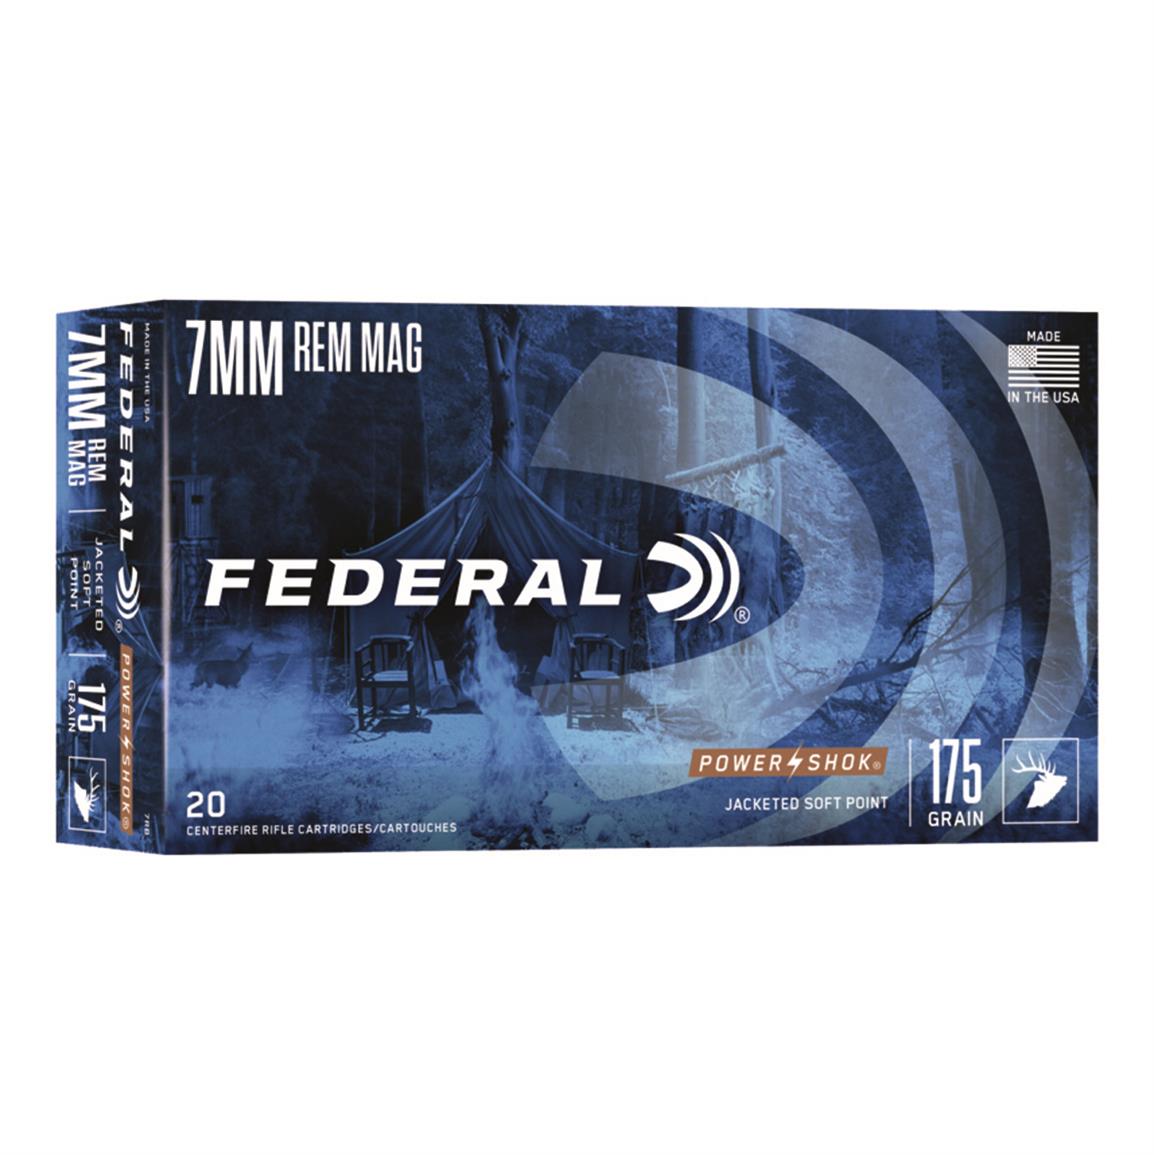 Federal Power-Shok, 7mm Rem. Mag., JSP, 175 Grain, 20 Rounds